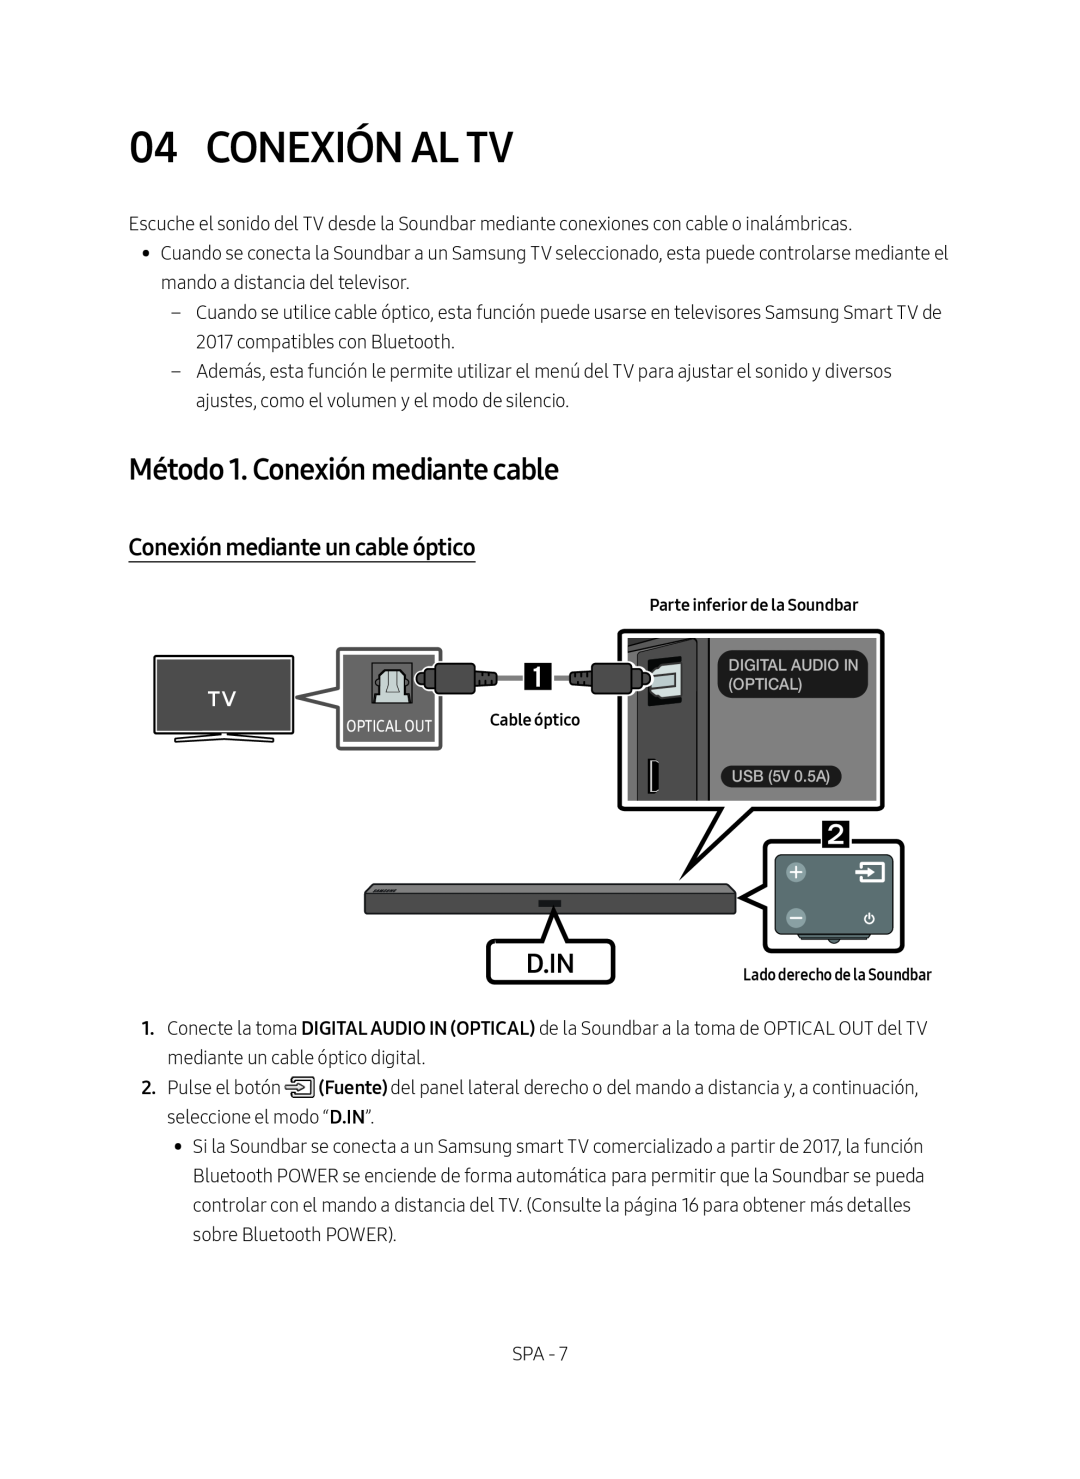 Samsung HW-M450/EN, HW-M450/ZG Conexión Al Tv, Método 1. Conexión mediante cable, Conexión mediante un cable óptico, D.In 